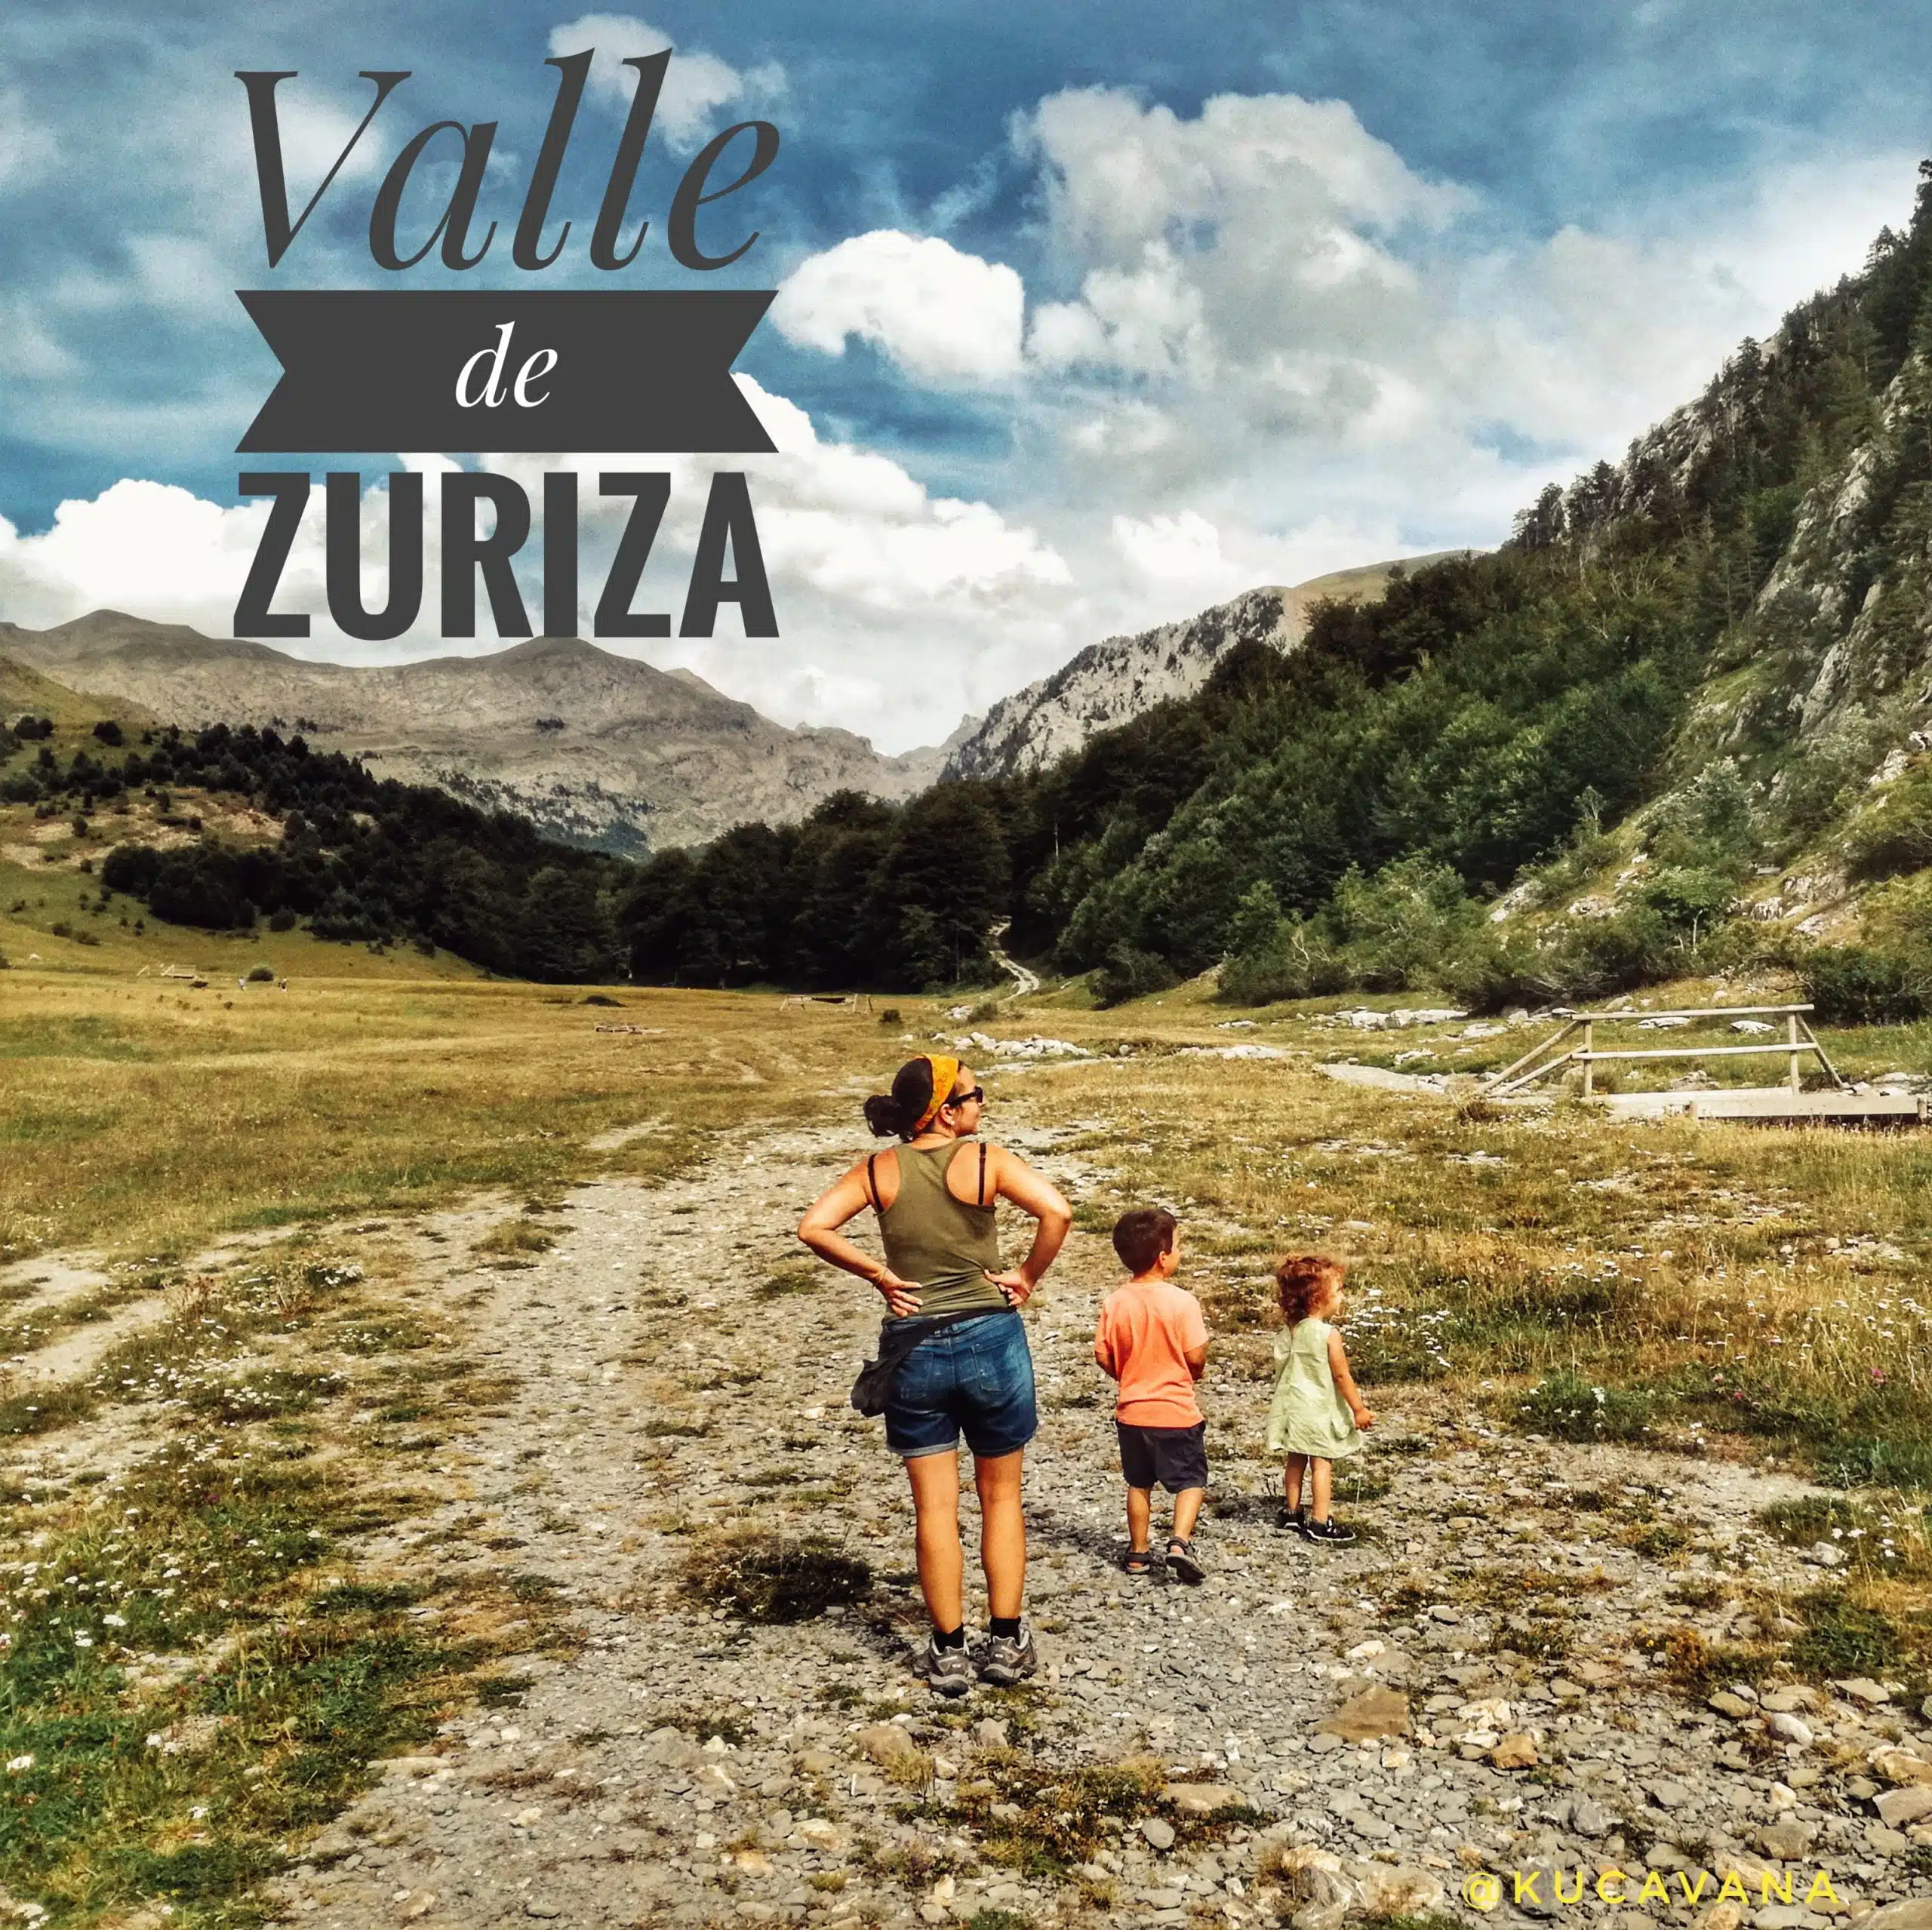 In questo momento stai vedendo El Valle de Zuriza, la grande destinazione dei Pirenei aragonesi che ancora non conosci